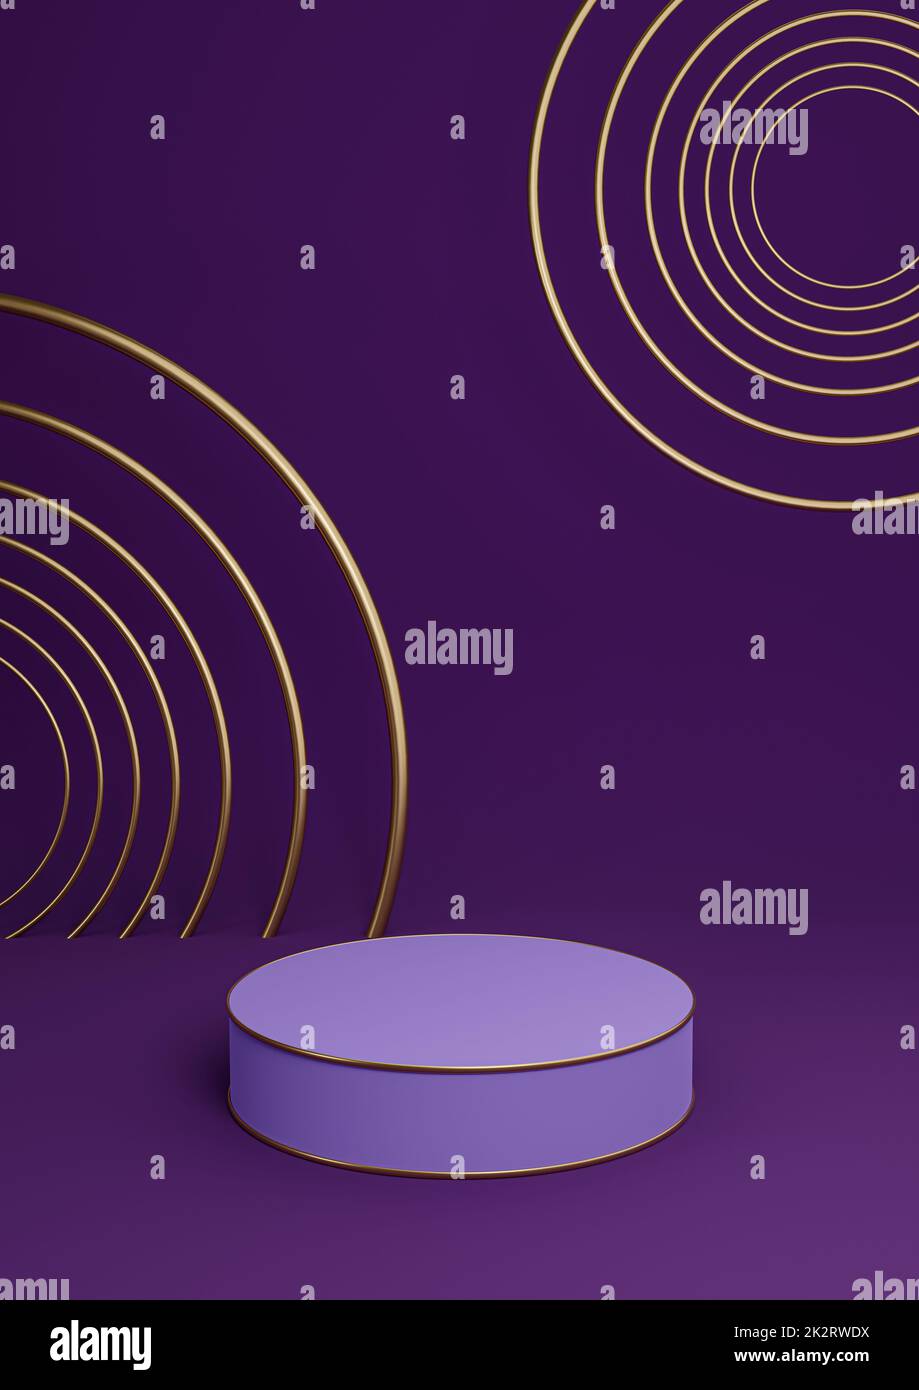 Dunkelviolett, violett, 3D-Darstellung minimales Produkt zeigt luxuriöses Zylinderpodium oder Produkthintergrund abstrakte Komposition mit goldenen Linien und Kreisen Stockfoto